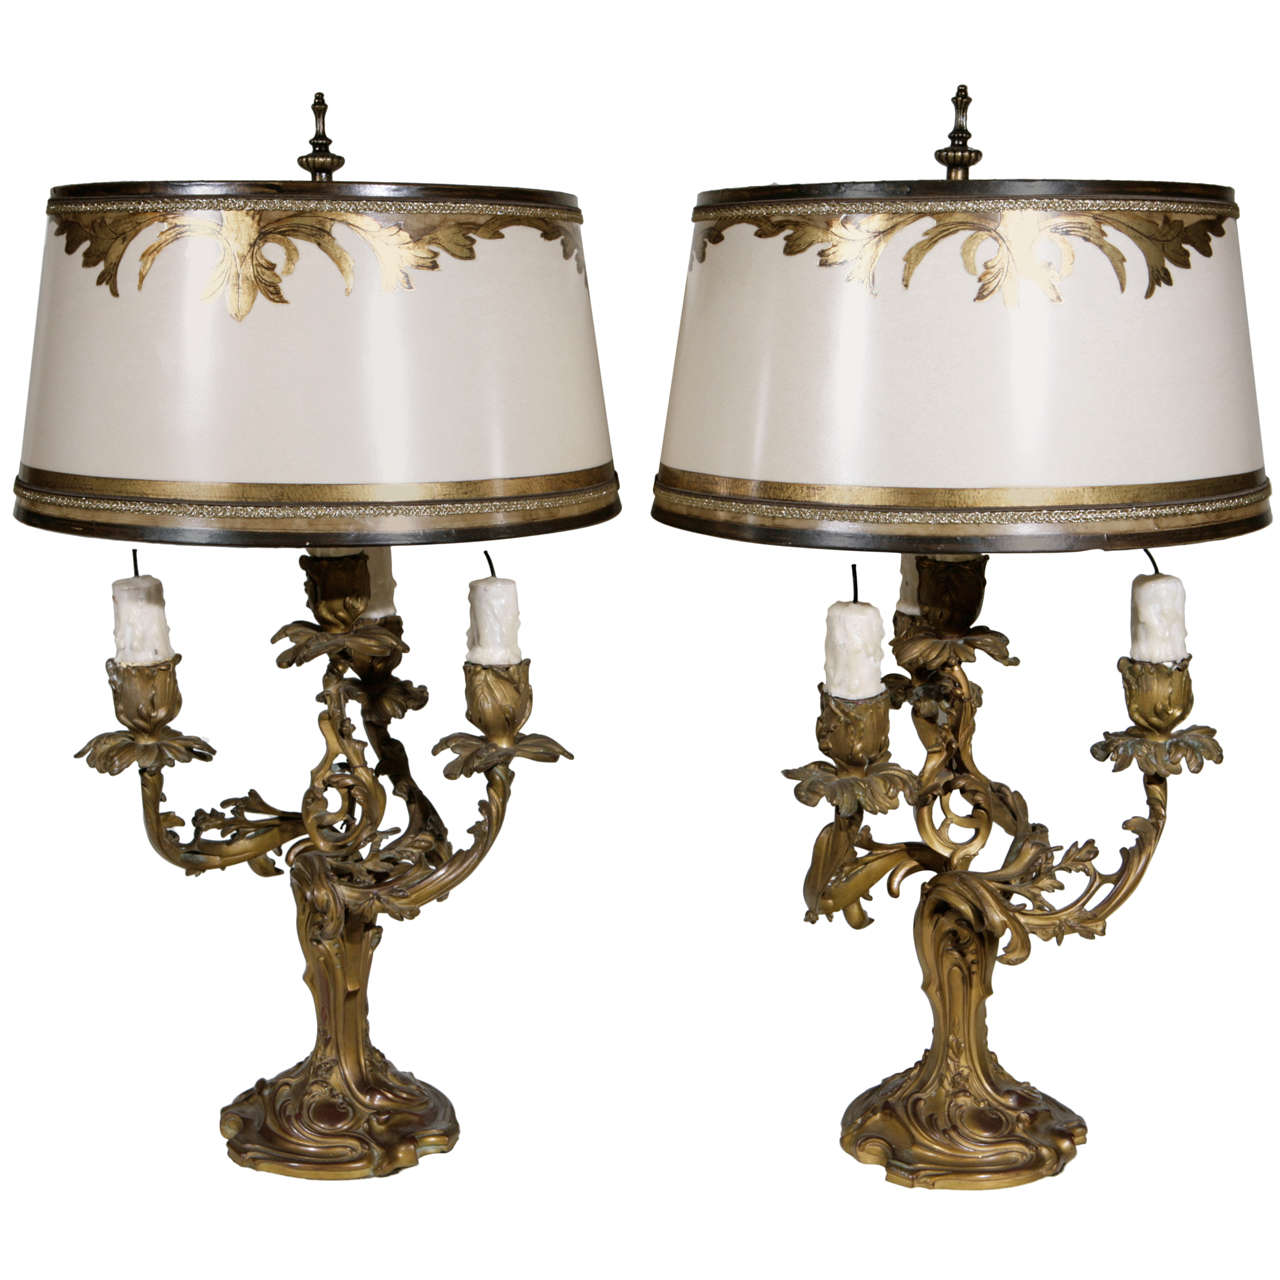 Paire d'objets du 19ème siècle Lampes candélabres français à 3 bras en bronze doré